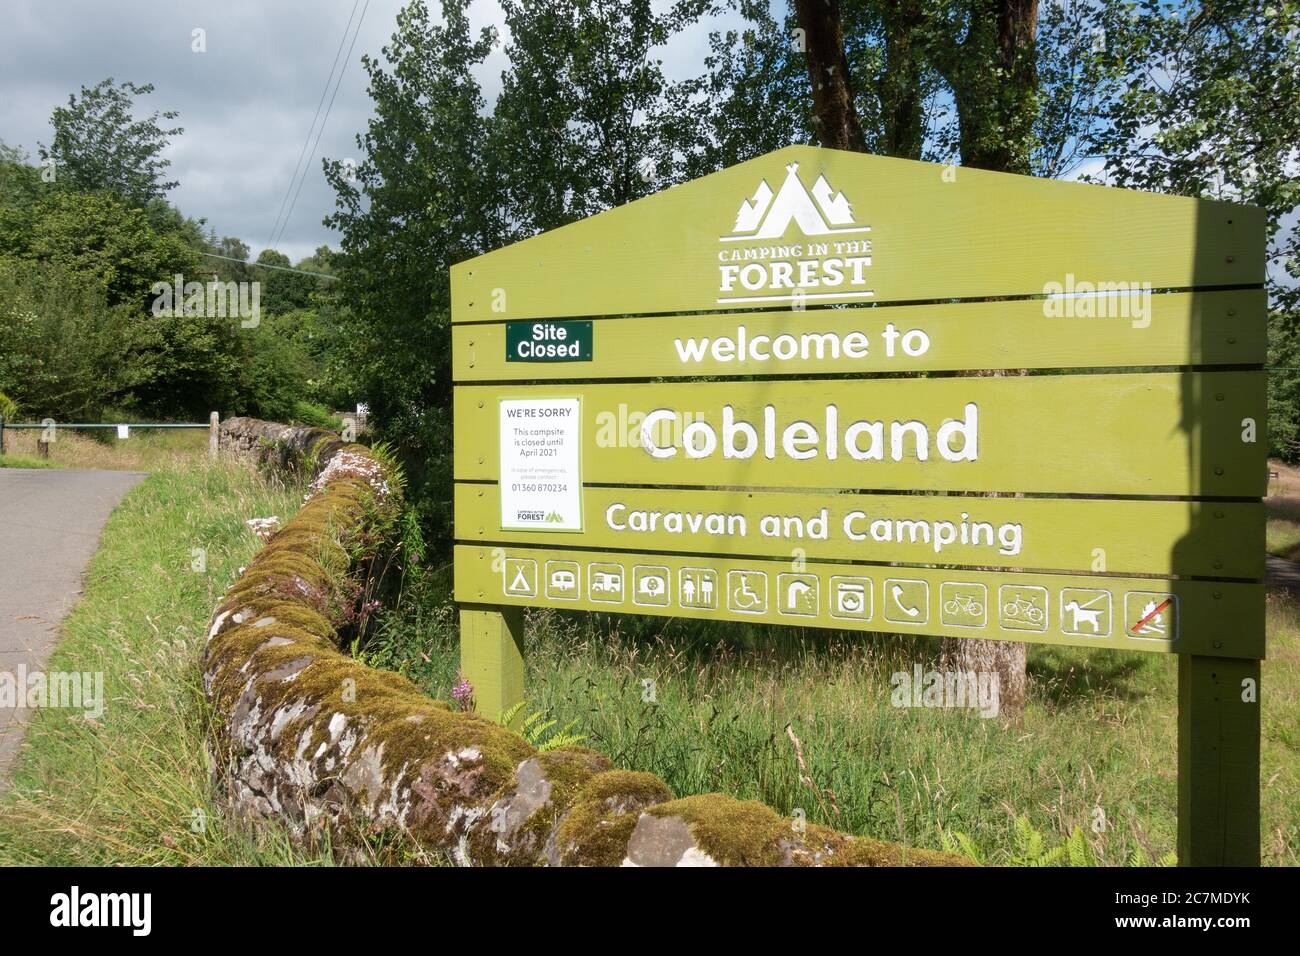 Campeggio Cobleland, Trossachs Camping nel sito della foresta - chiuso fino ad aprile 2021 a causa del segnale pandemico coronavirus - Scozia, Regno Unito Foto Stock